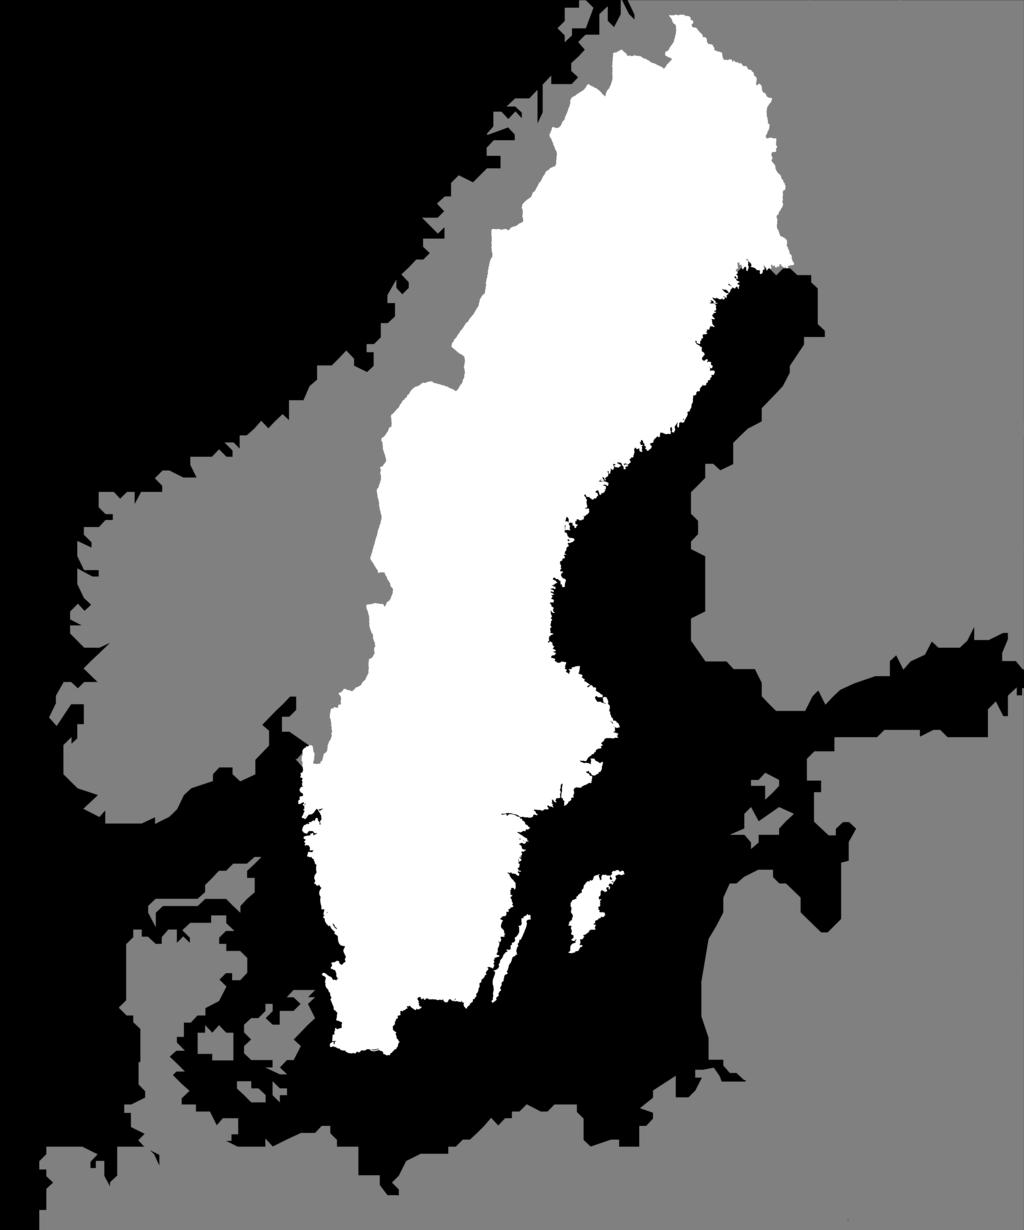 Luleå, Piteå, Skellefteå, Umeå, Örnsköldsvik, Sundsvall, Hudiksvall, Söderhamn och Gävle kommun samt